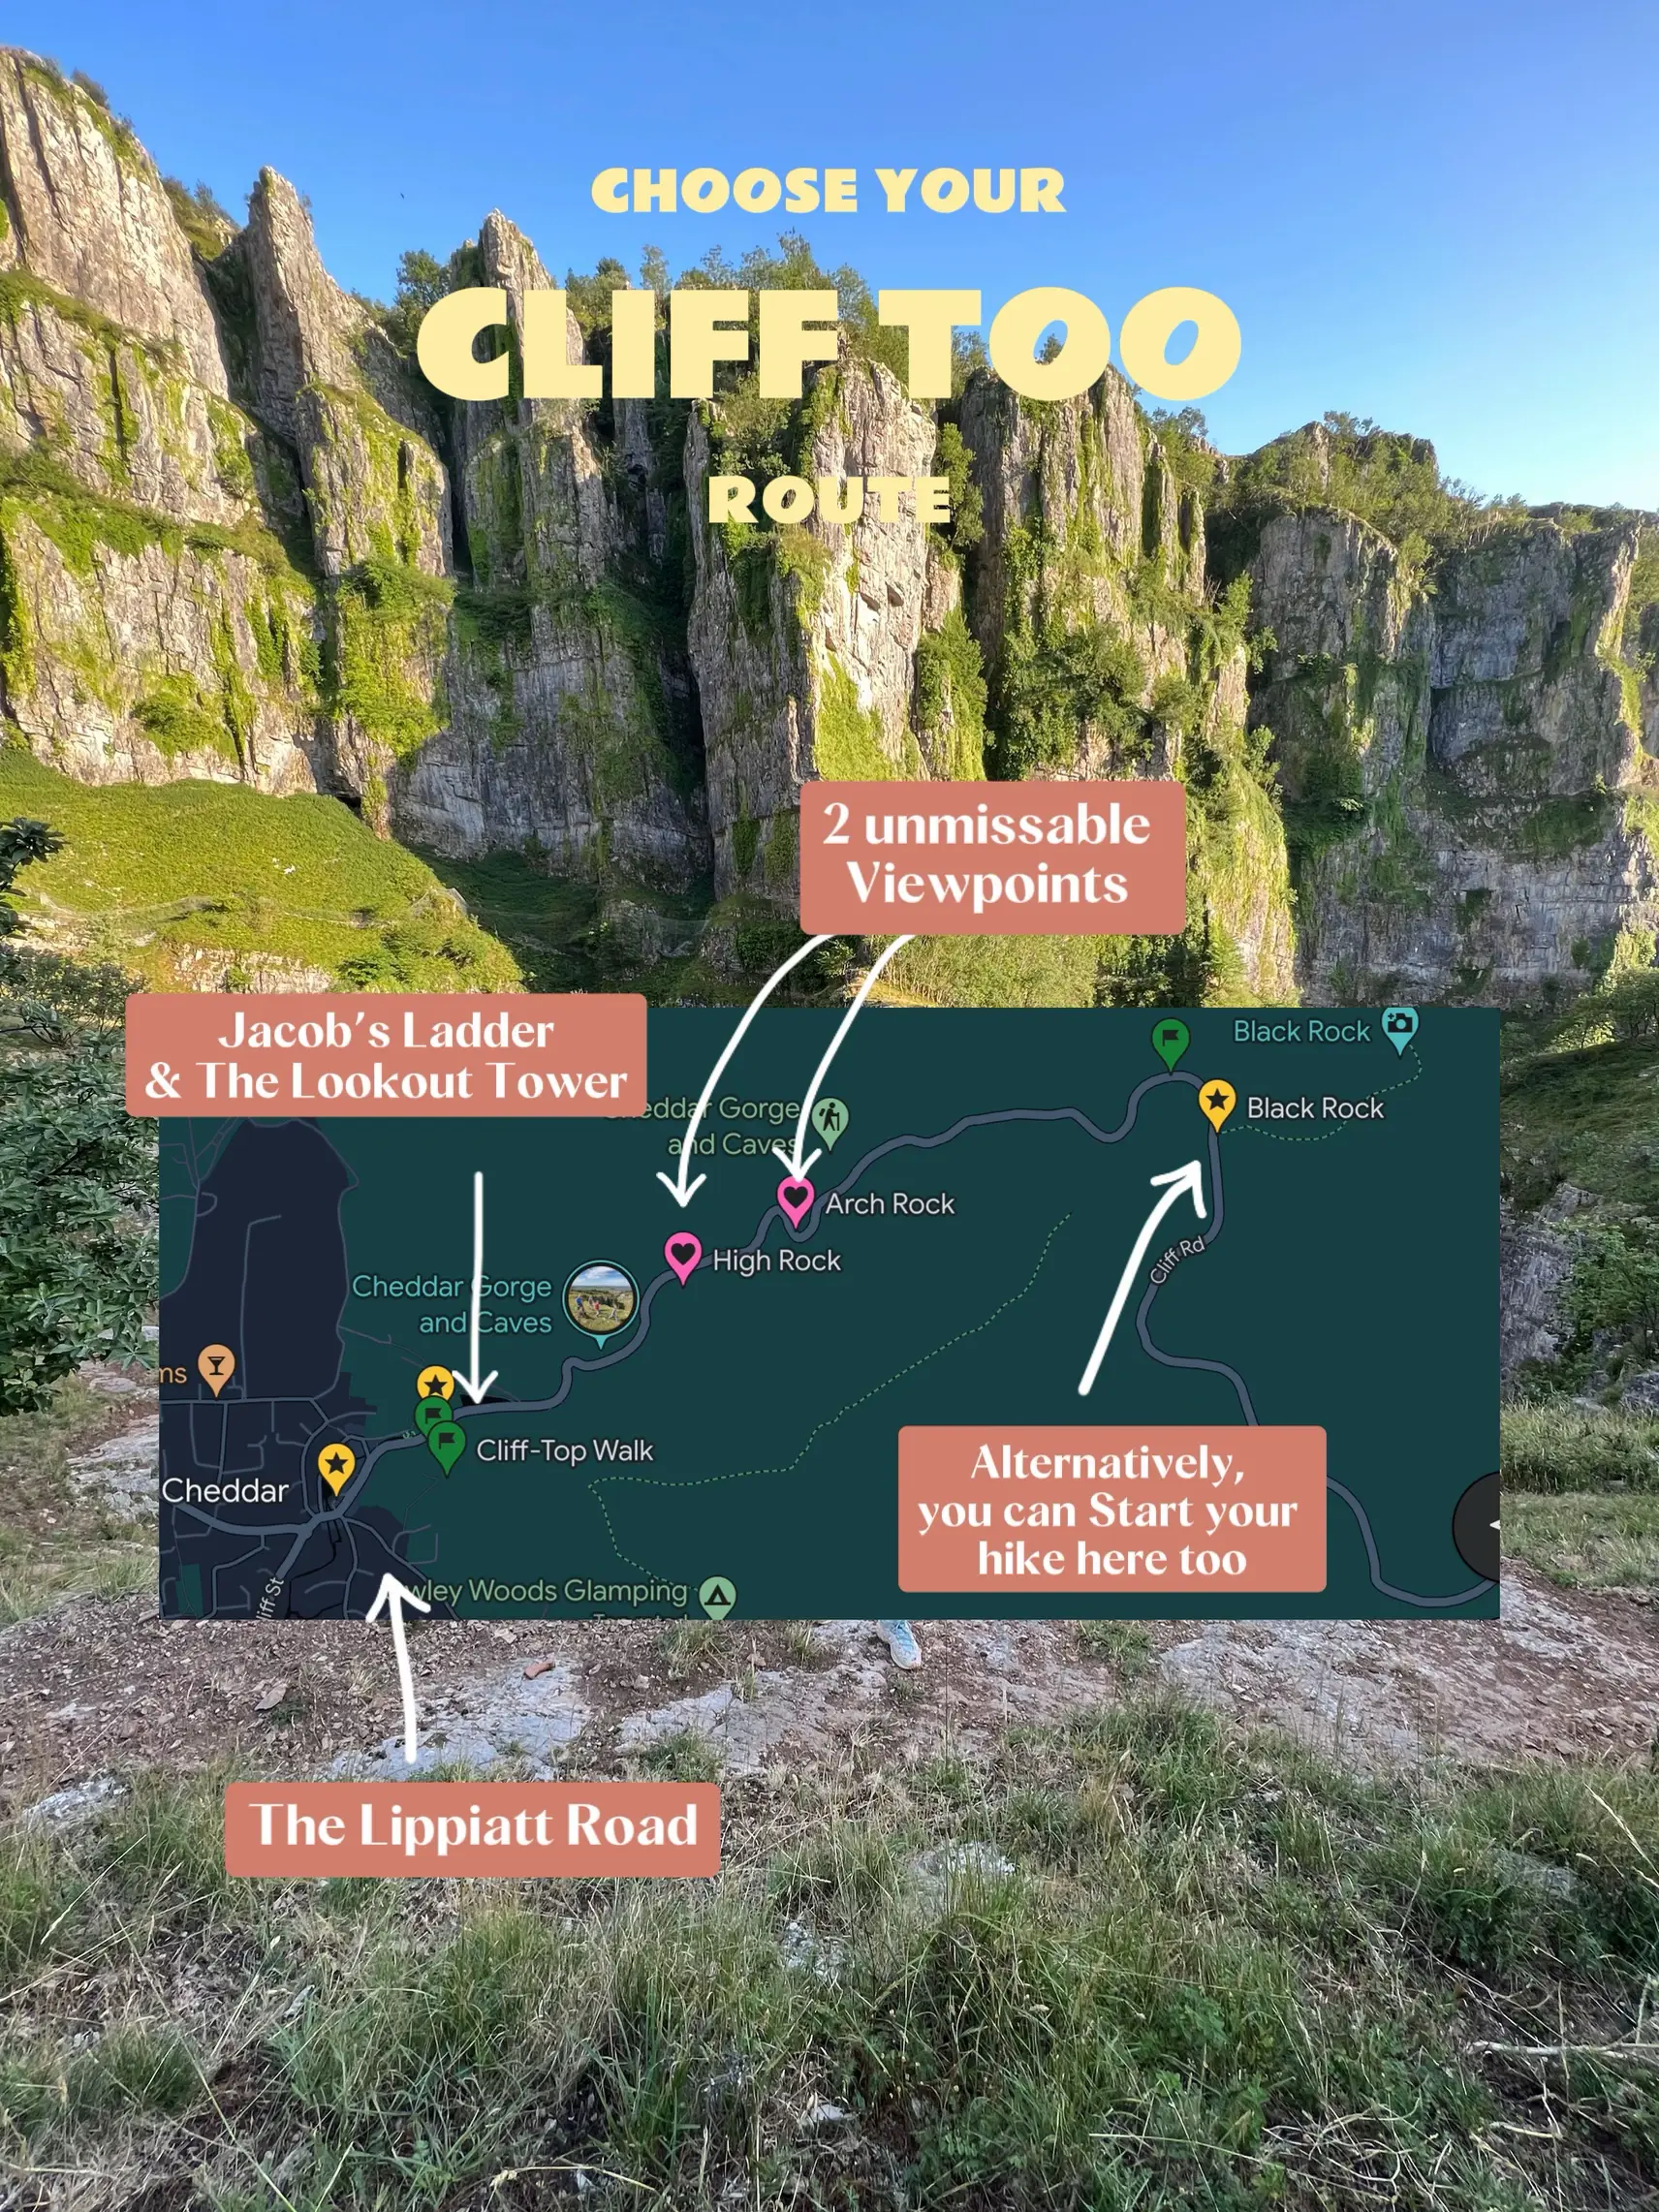 A Trip to Cheddar Gorge